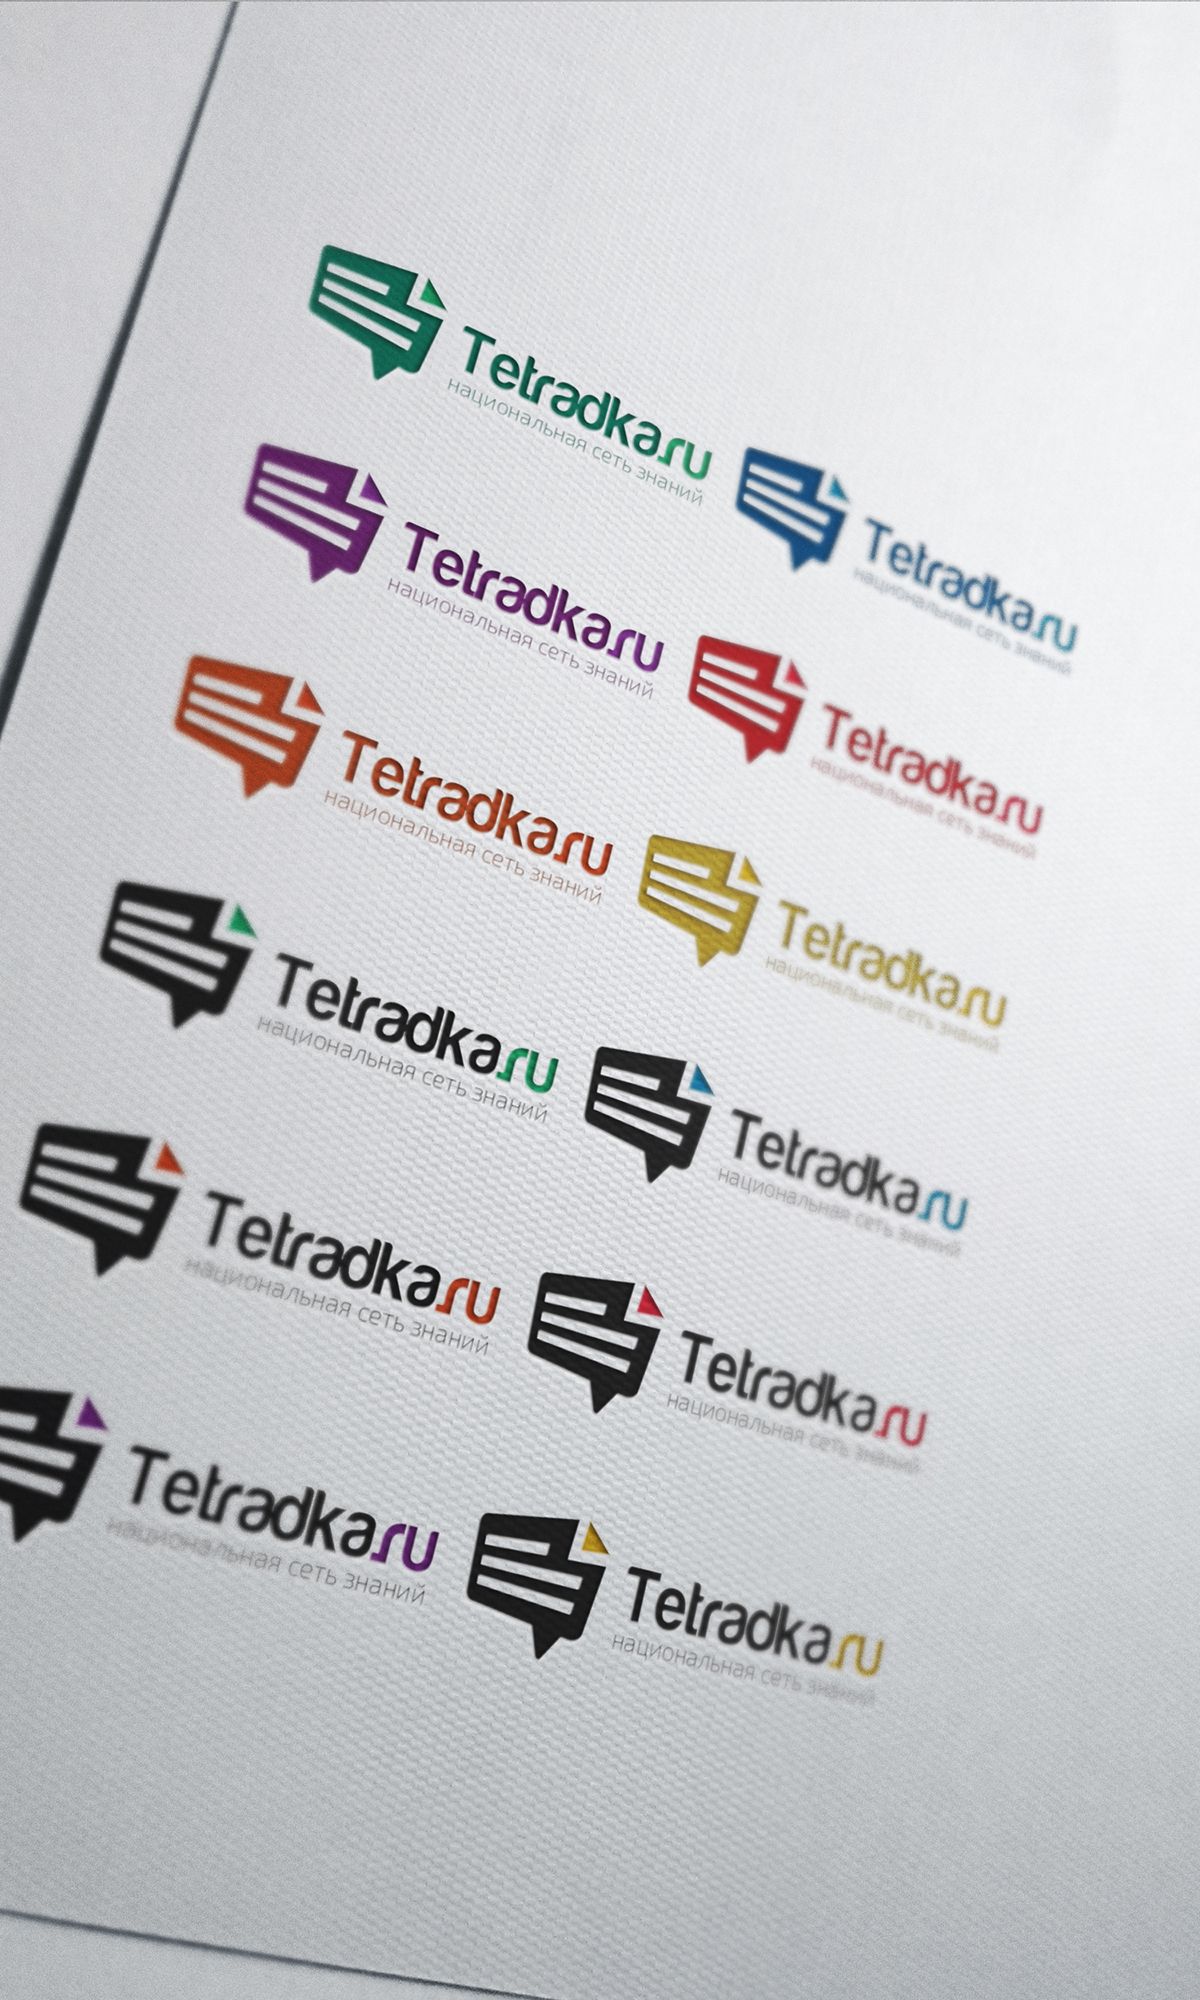 Логотип для образовательной сети tetradka.ru - дизайнер vadimsoloviev